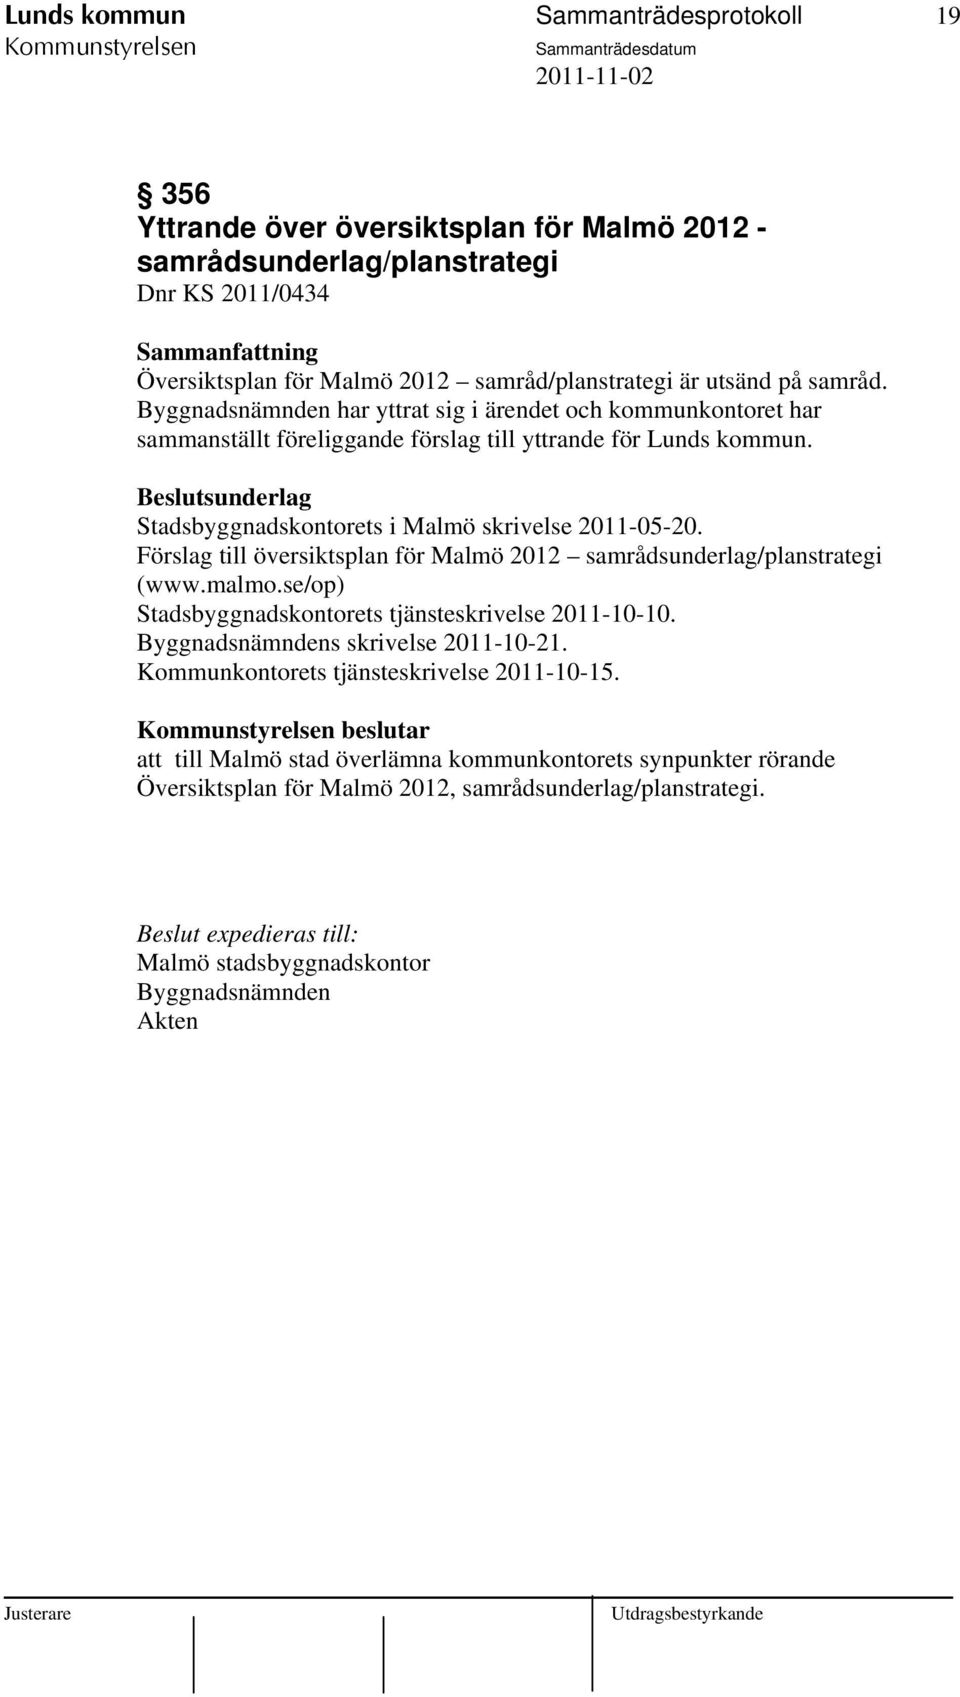 Förslag till översiktsplan för Malmö 2012 samrådsunderlag/planstrategi (www.malmo.se/op) Stadsbyggnadskontorets tjänsteskrivelse 2011-10-10. Byggnadsnämndens skrivelse 2011-10-21.